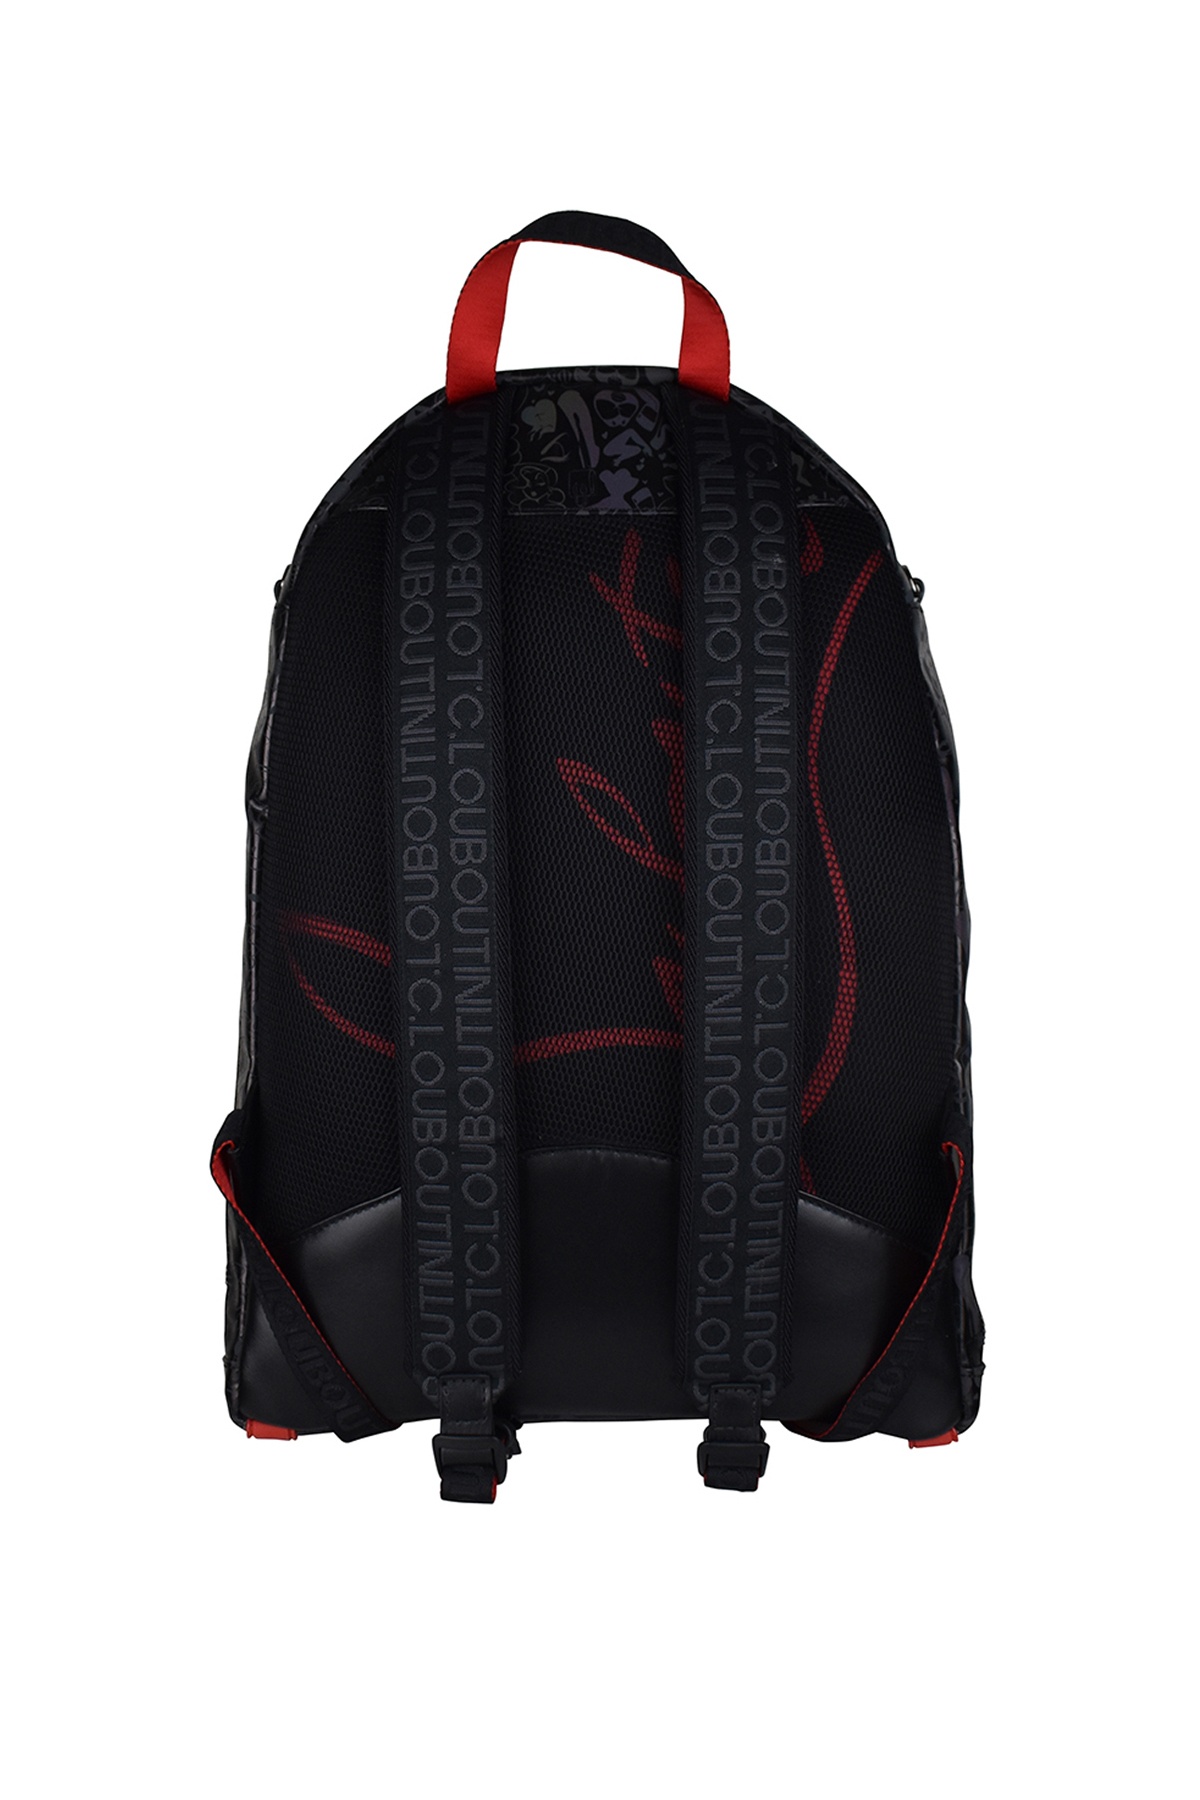 Backparis Backpack - 3